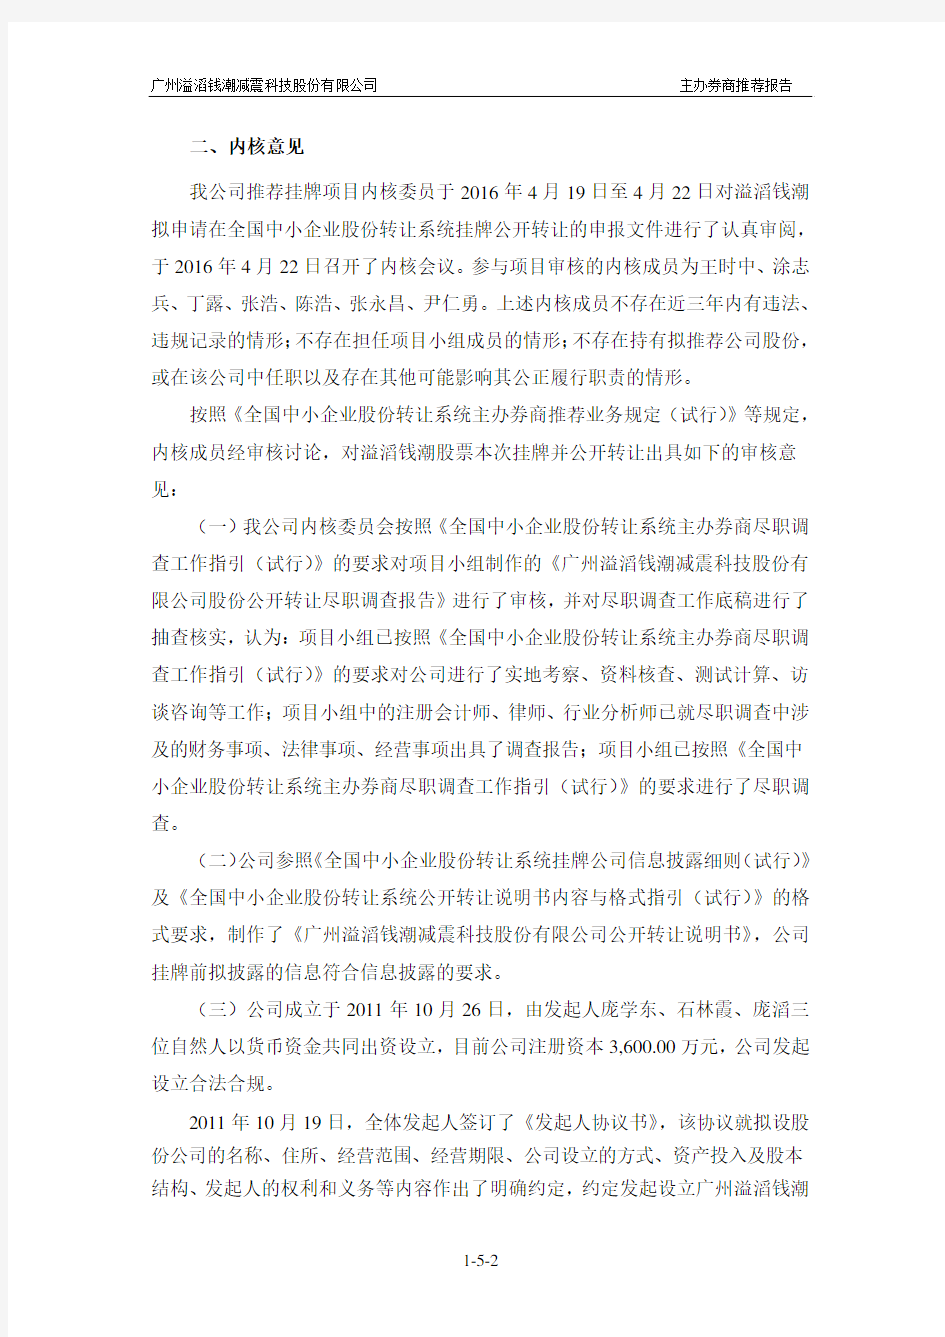 安信证券股份有限公司关于推荐广州溢滔钱潮减震科技股份有